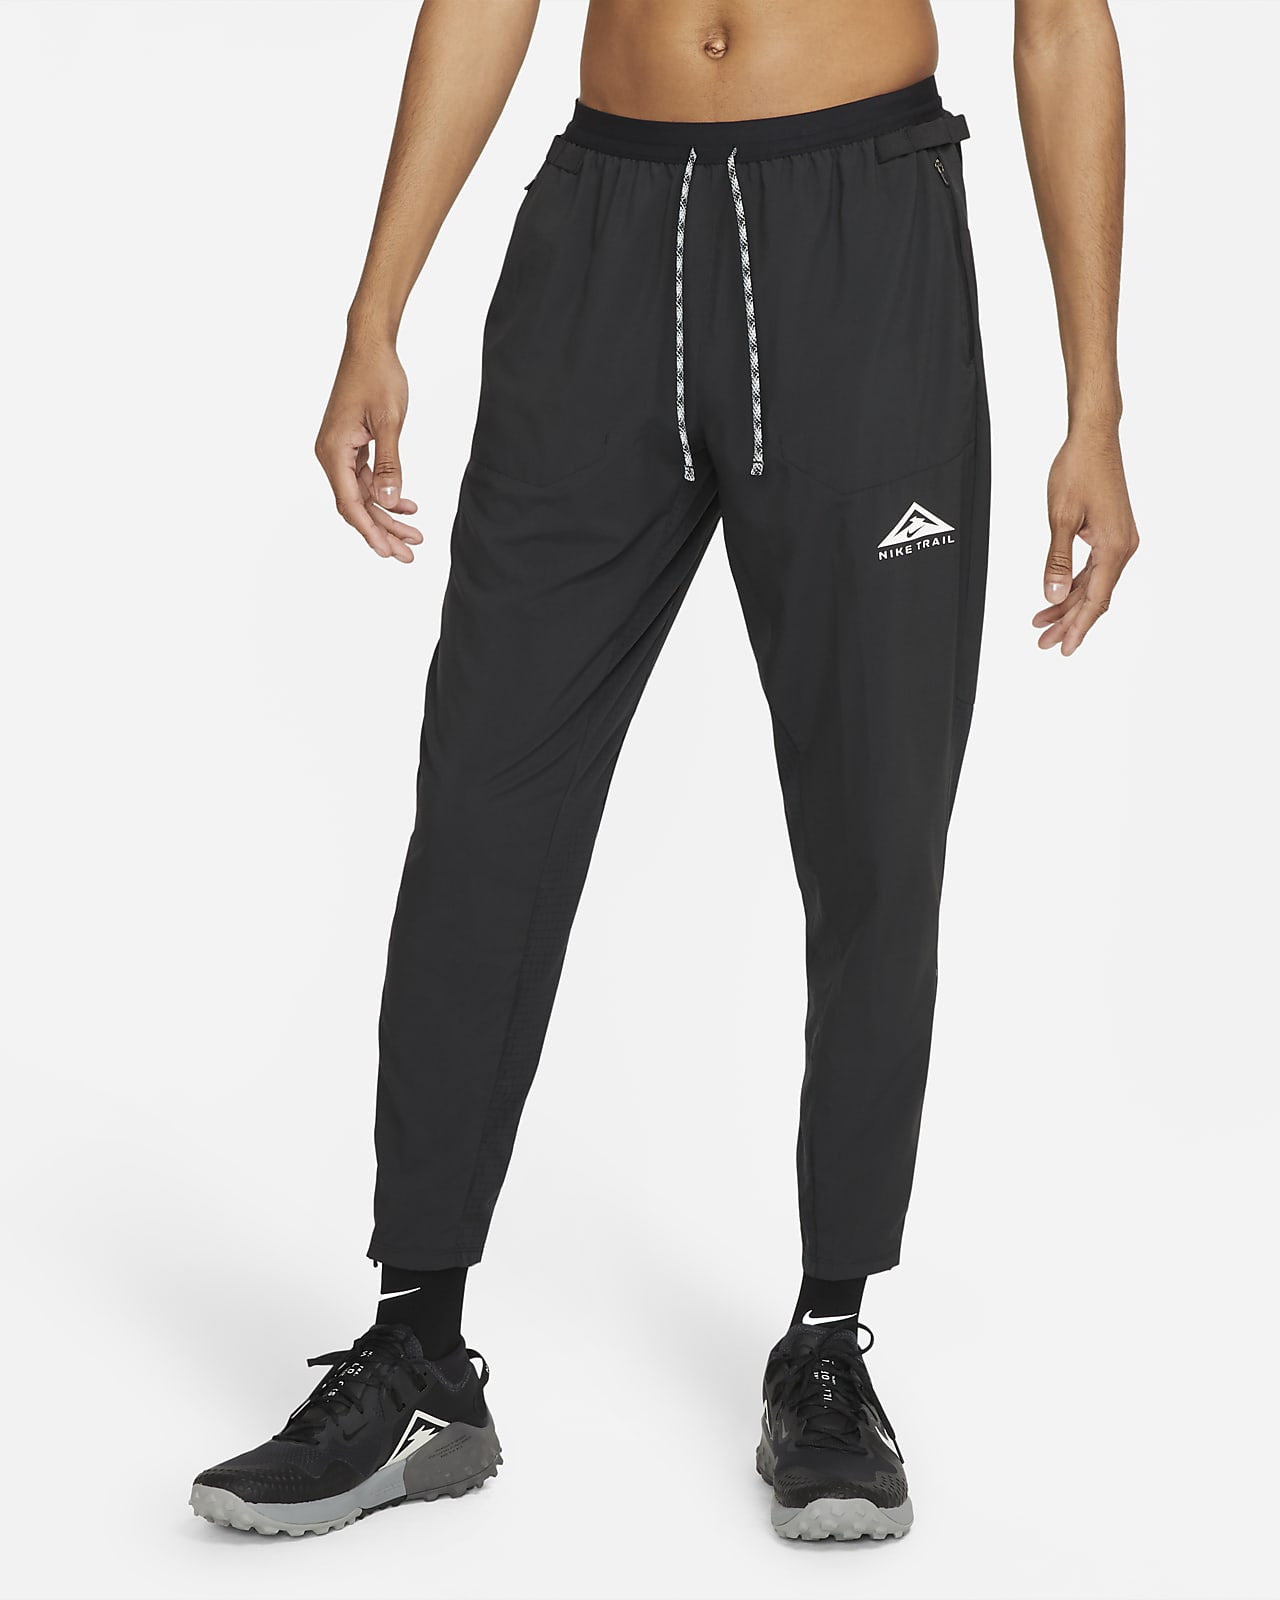 Мужские брюки для трейлраннинга из тканого материала Nike Phenom Elite